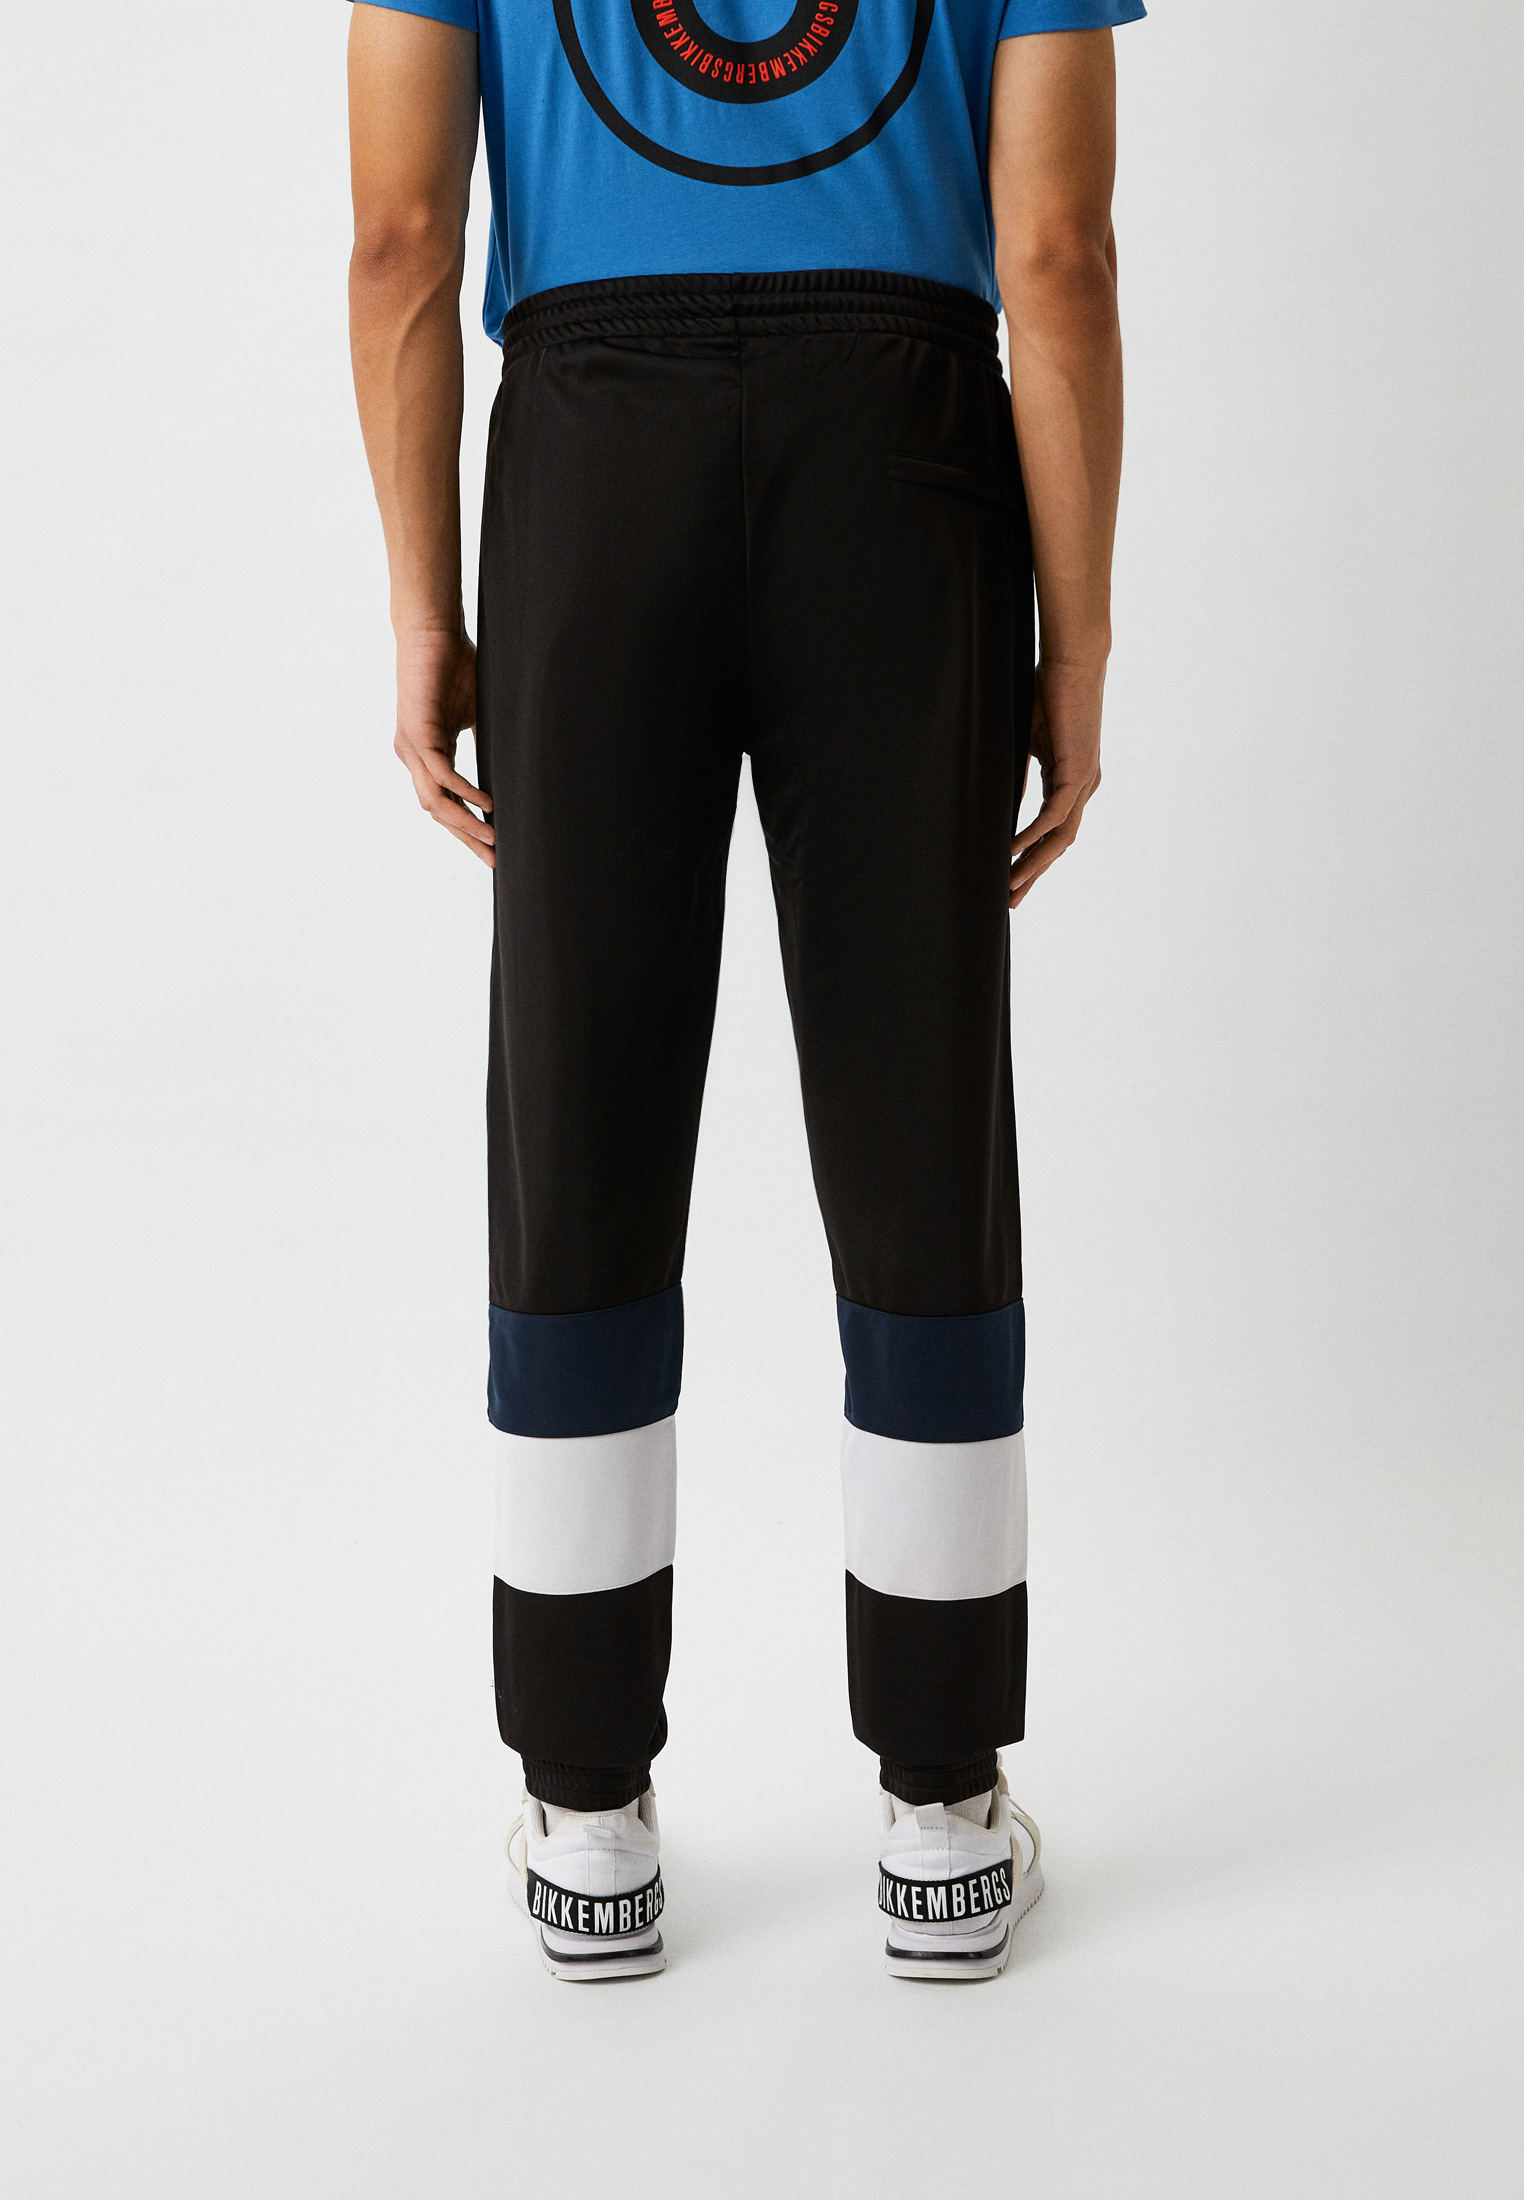 Мужские спортивные брюки Bikkembergs (Биккембергс) C 1 103 00 M 4109: изображение 3